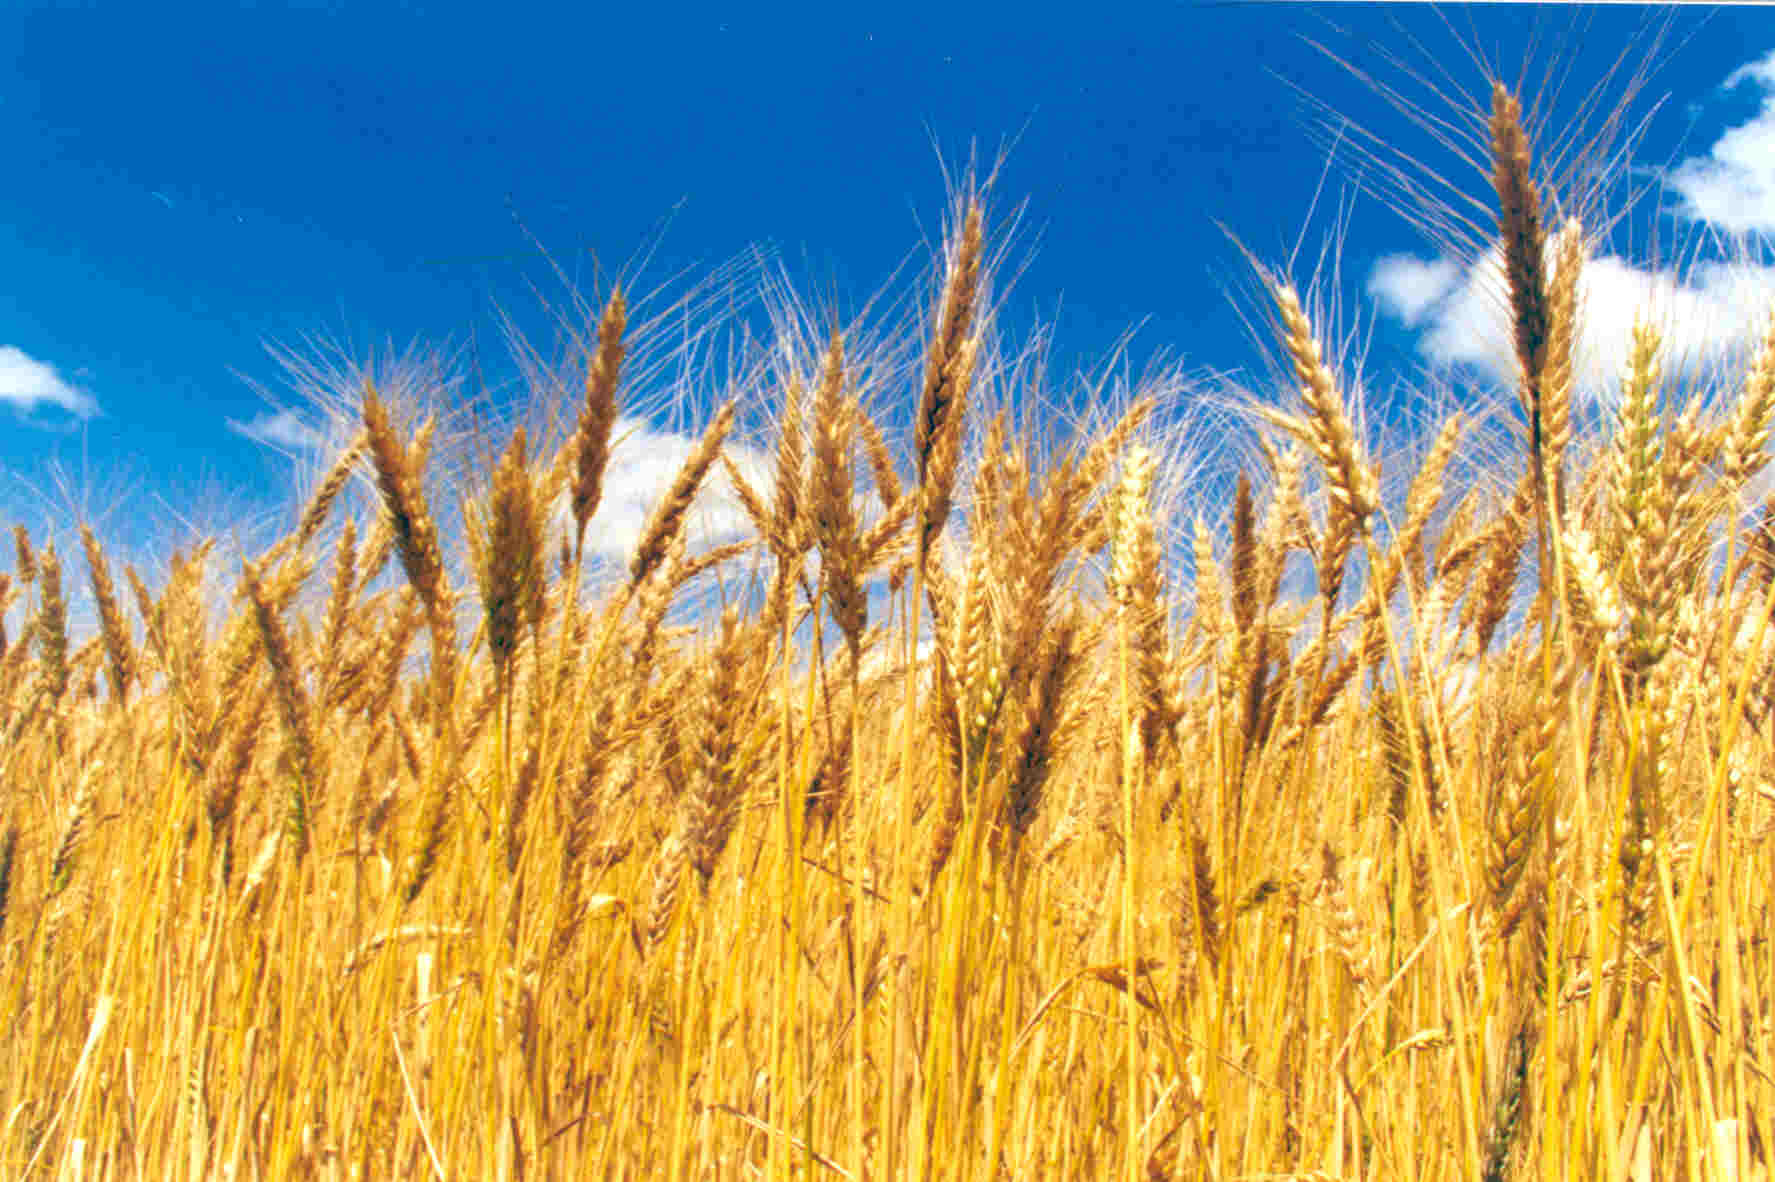 RS: Farsul pede prorrogação do ICMS de 2% para o trigo